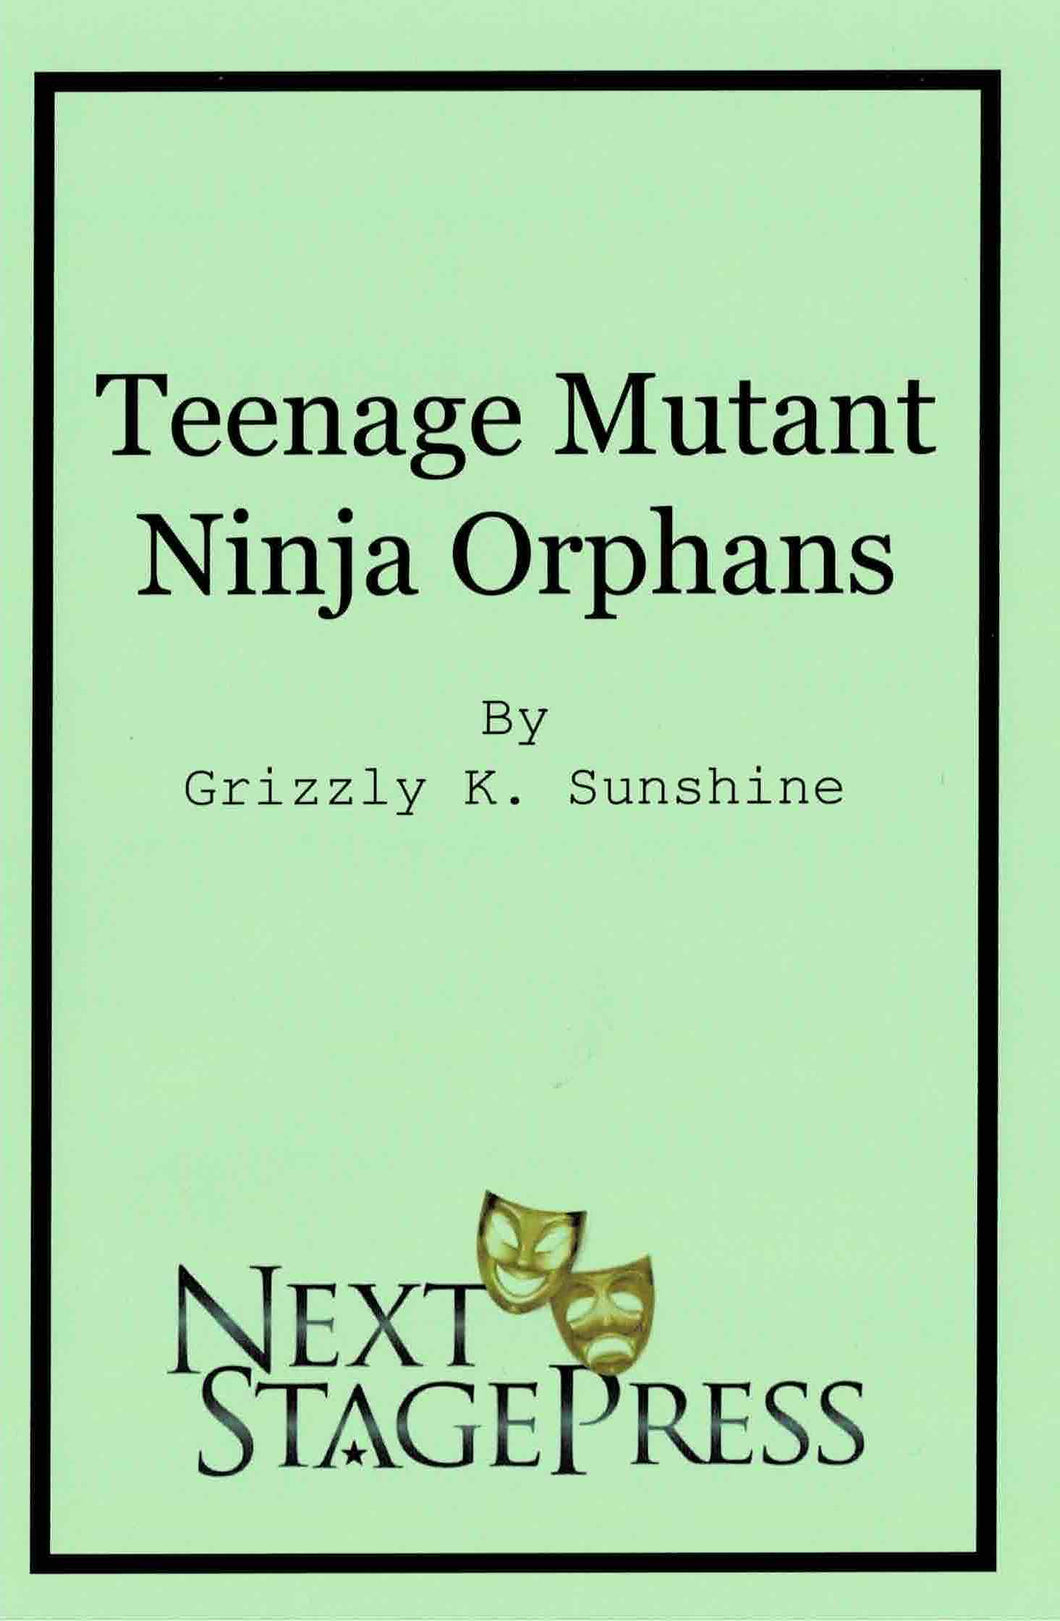 Teenage Mutant Ninja Orphans -Digital Version